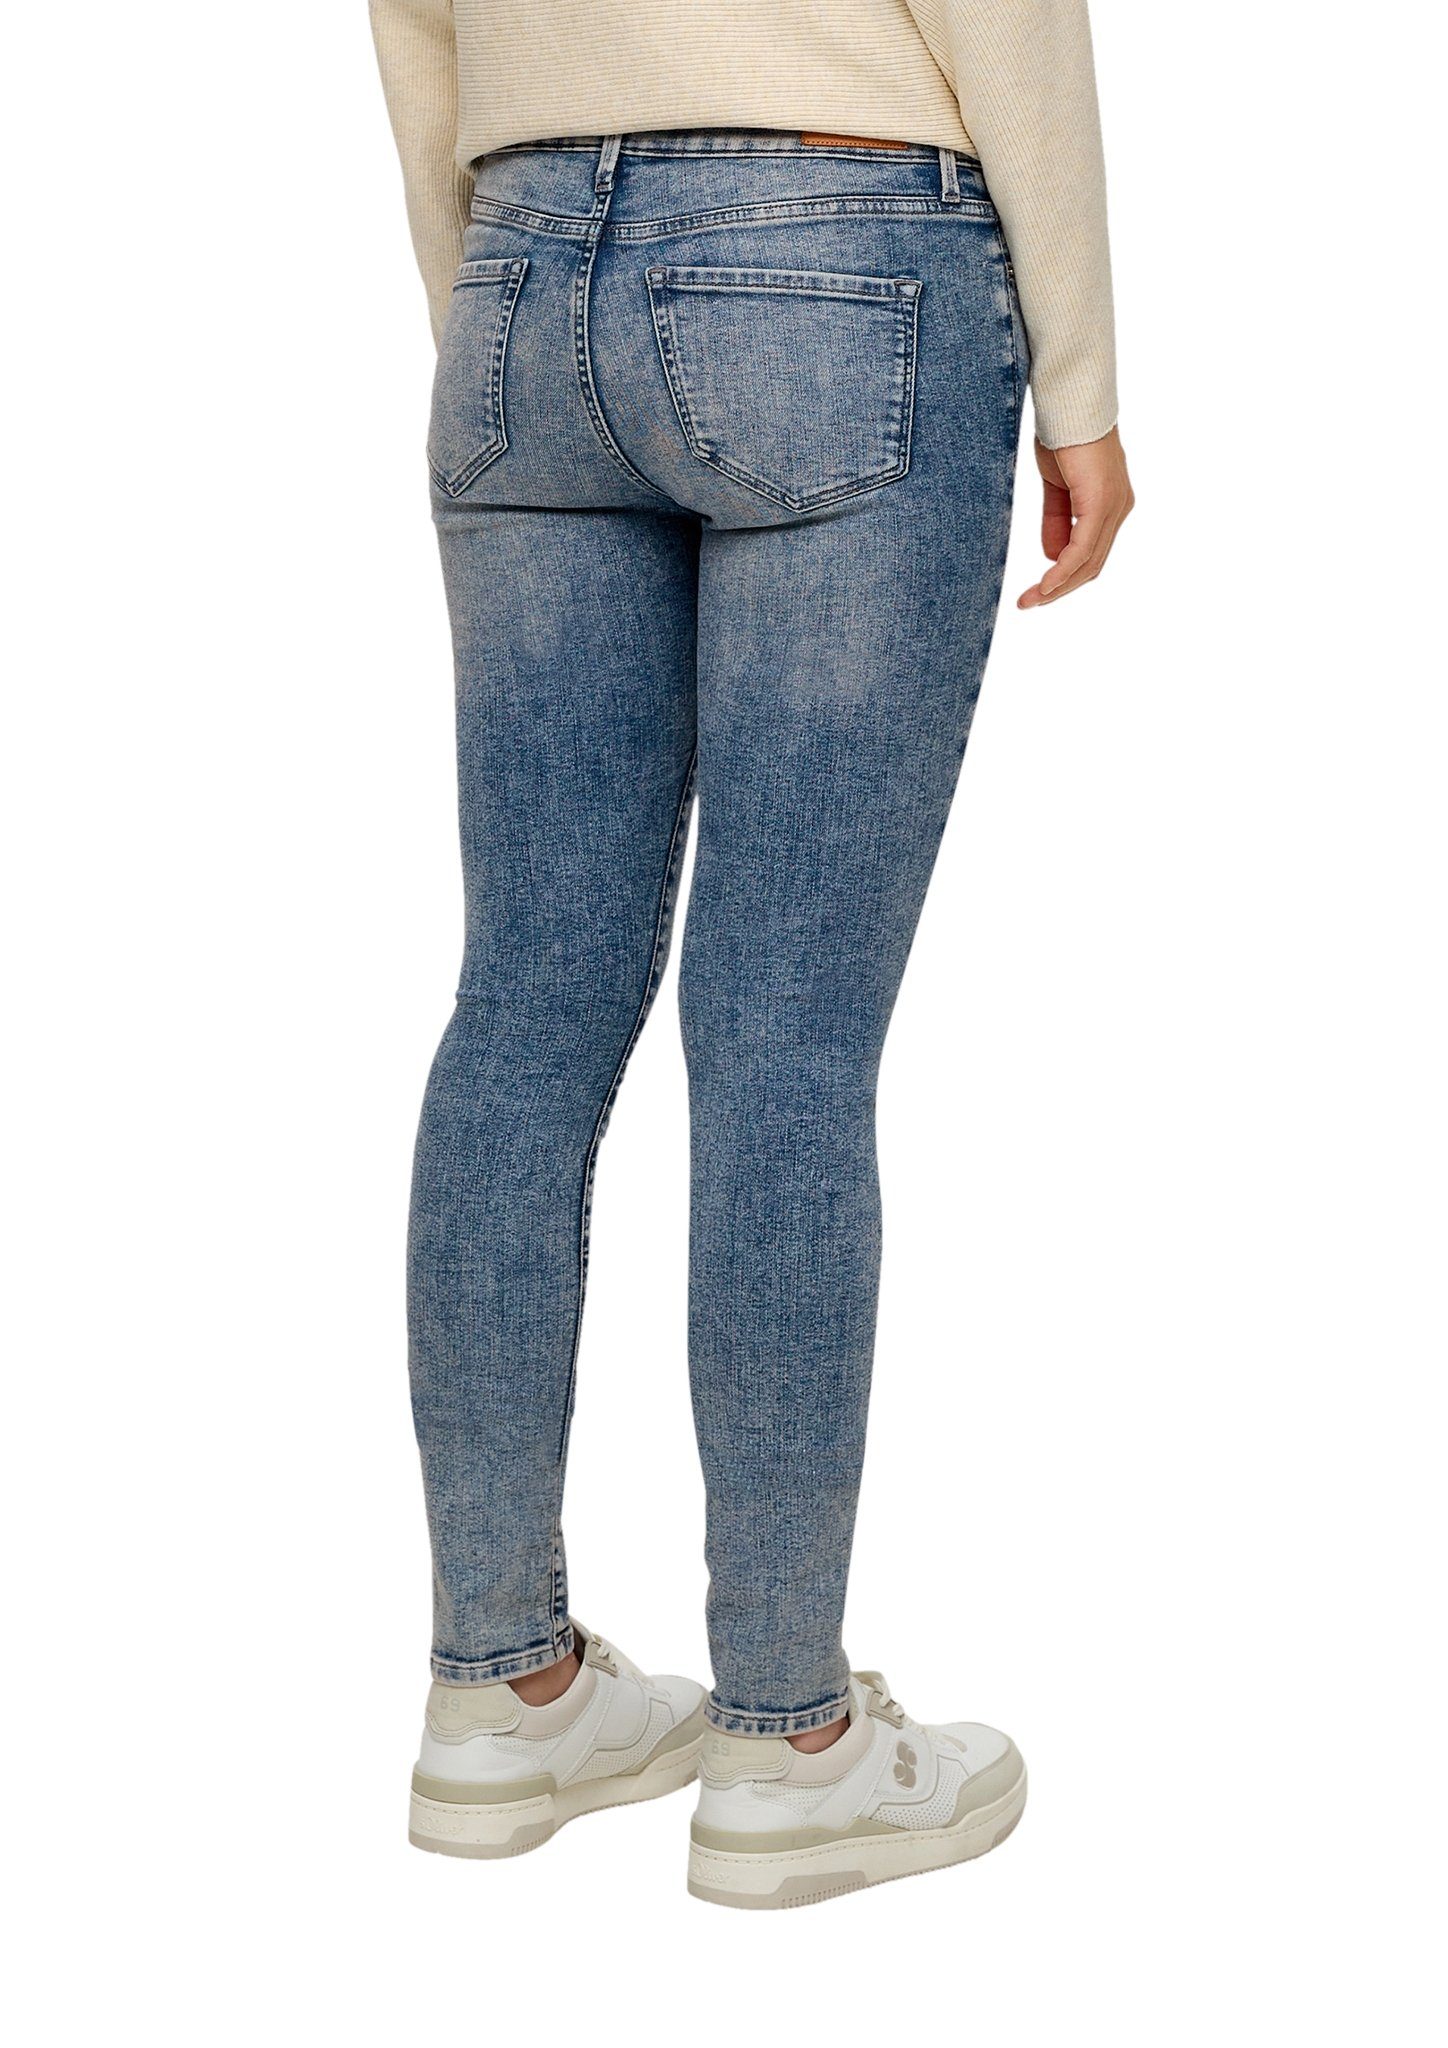 Jeans-Hose s.Oliver 5-Pocket-Jeans